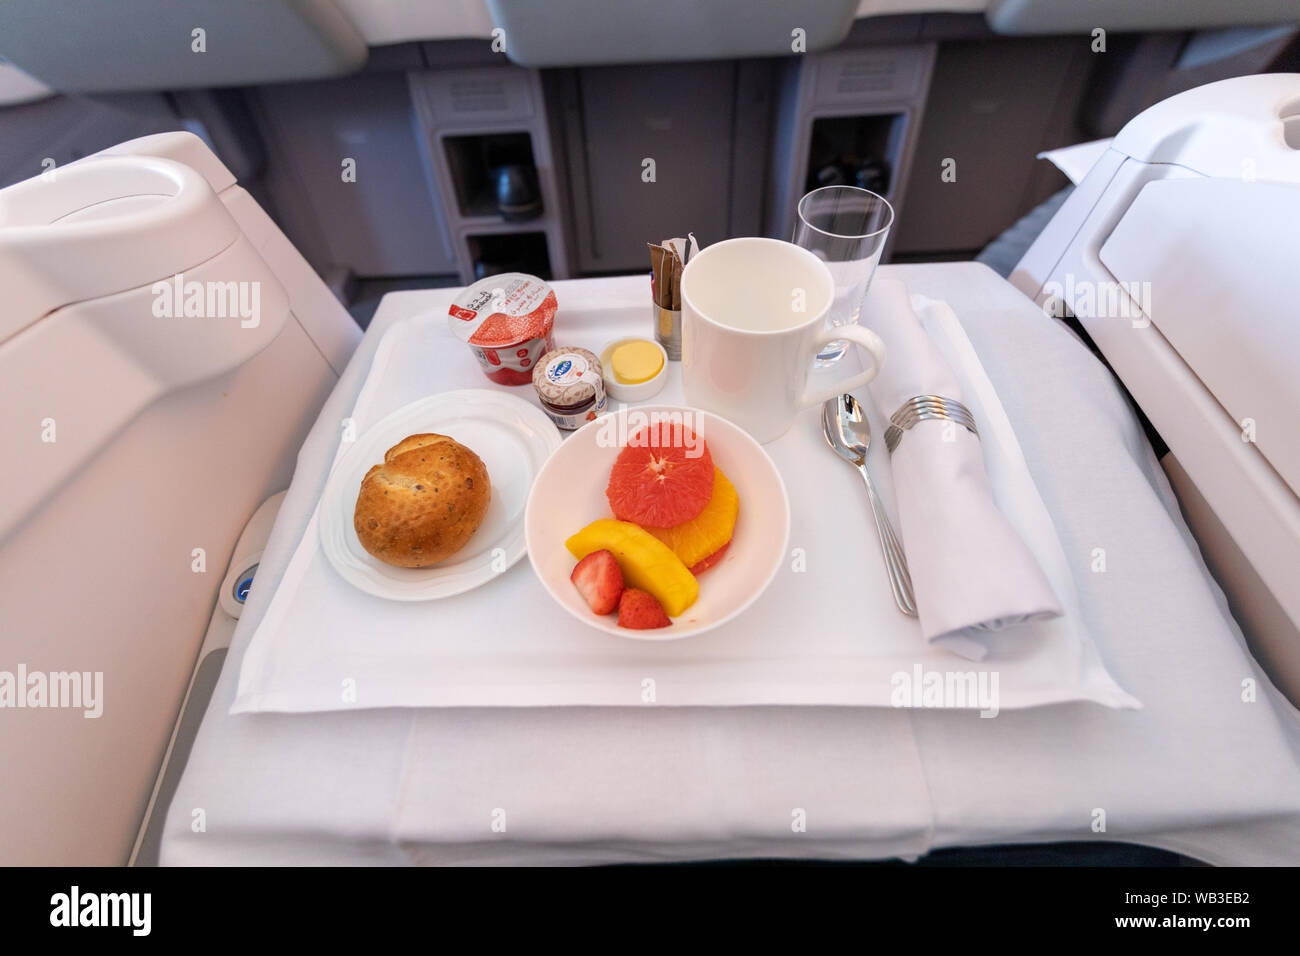 Dubaï, Émirats arabes unis - circa 2019 - Emirates airline business class intérieur avec bac alimentaire Unis est le compagnies de pavillon des Émirats arabes unis. Banque D'Images